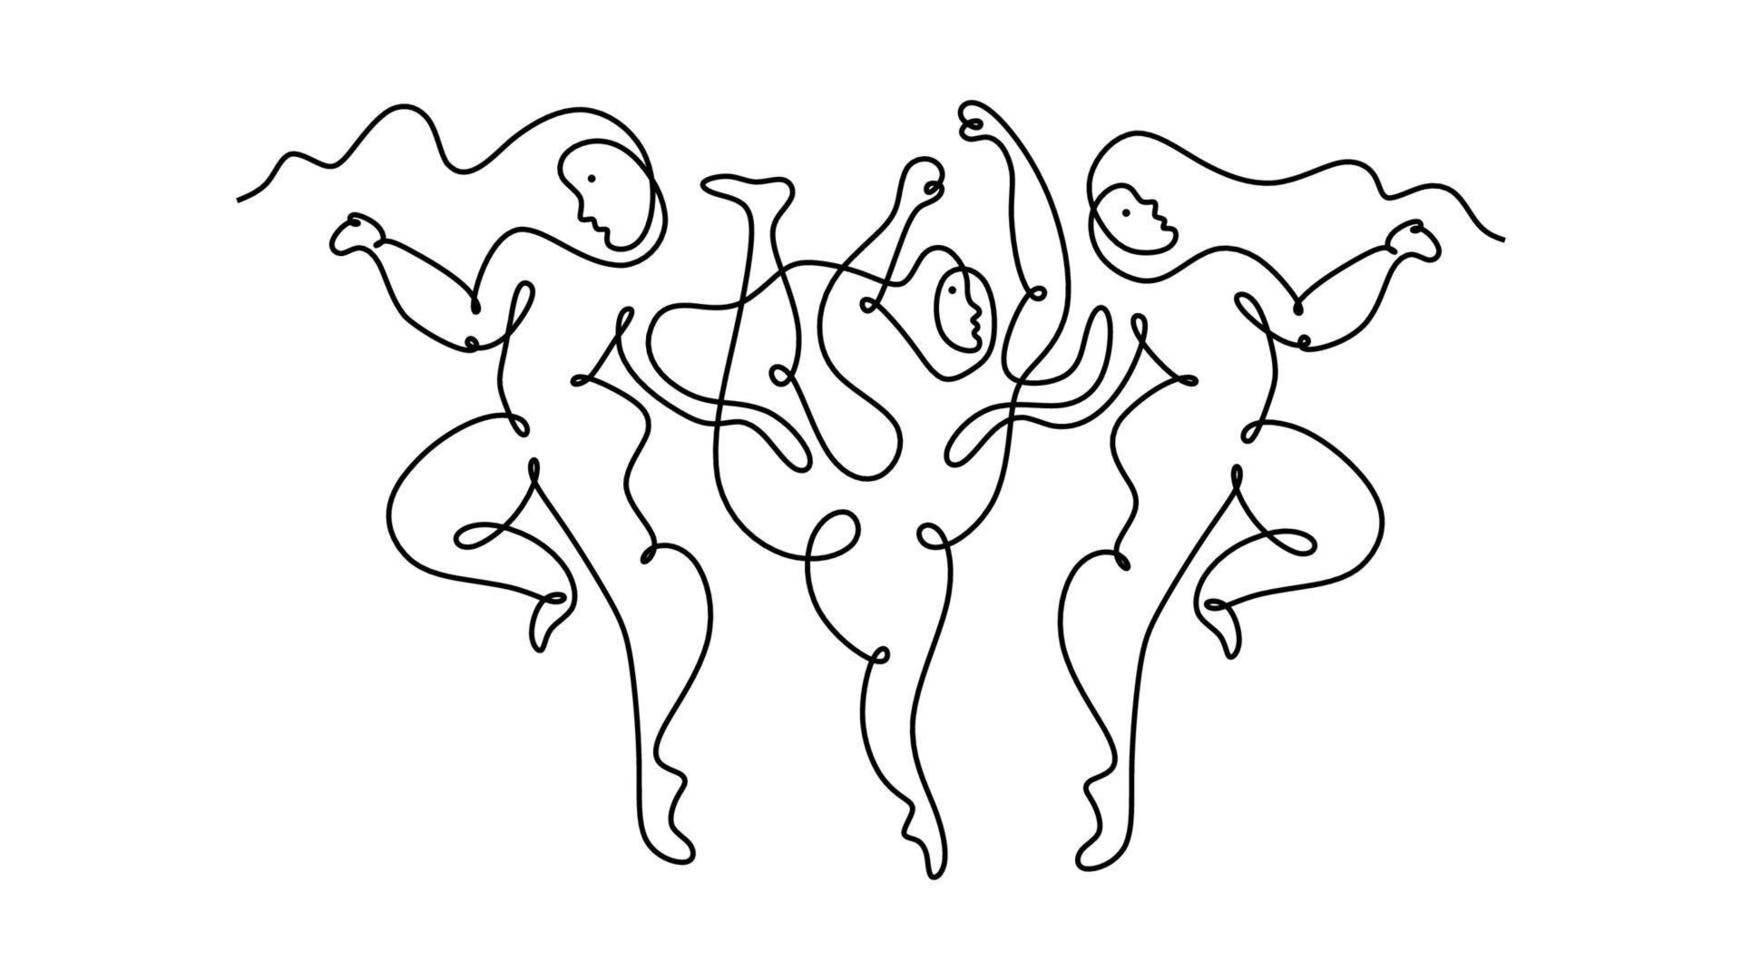 een doorlopend single lijn tekening van dansen mensen picasso. vector